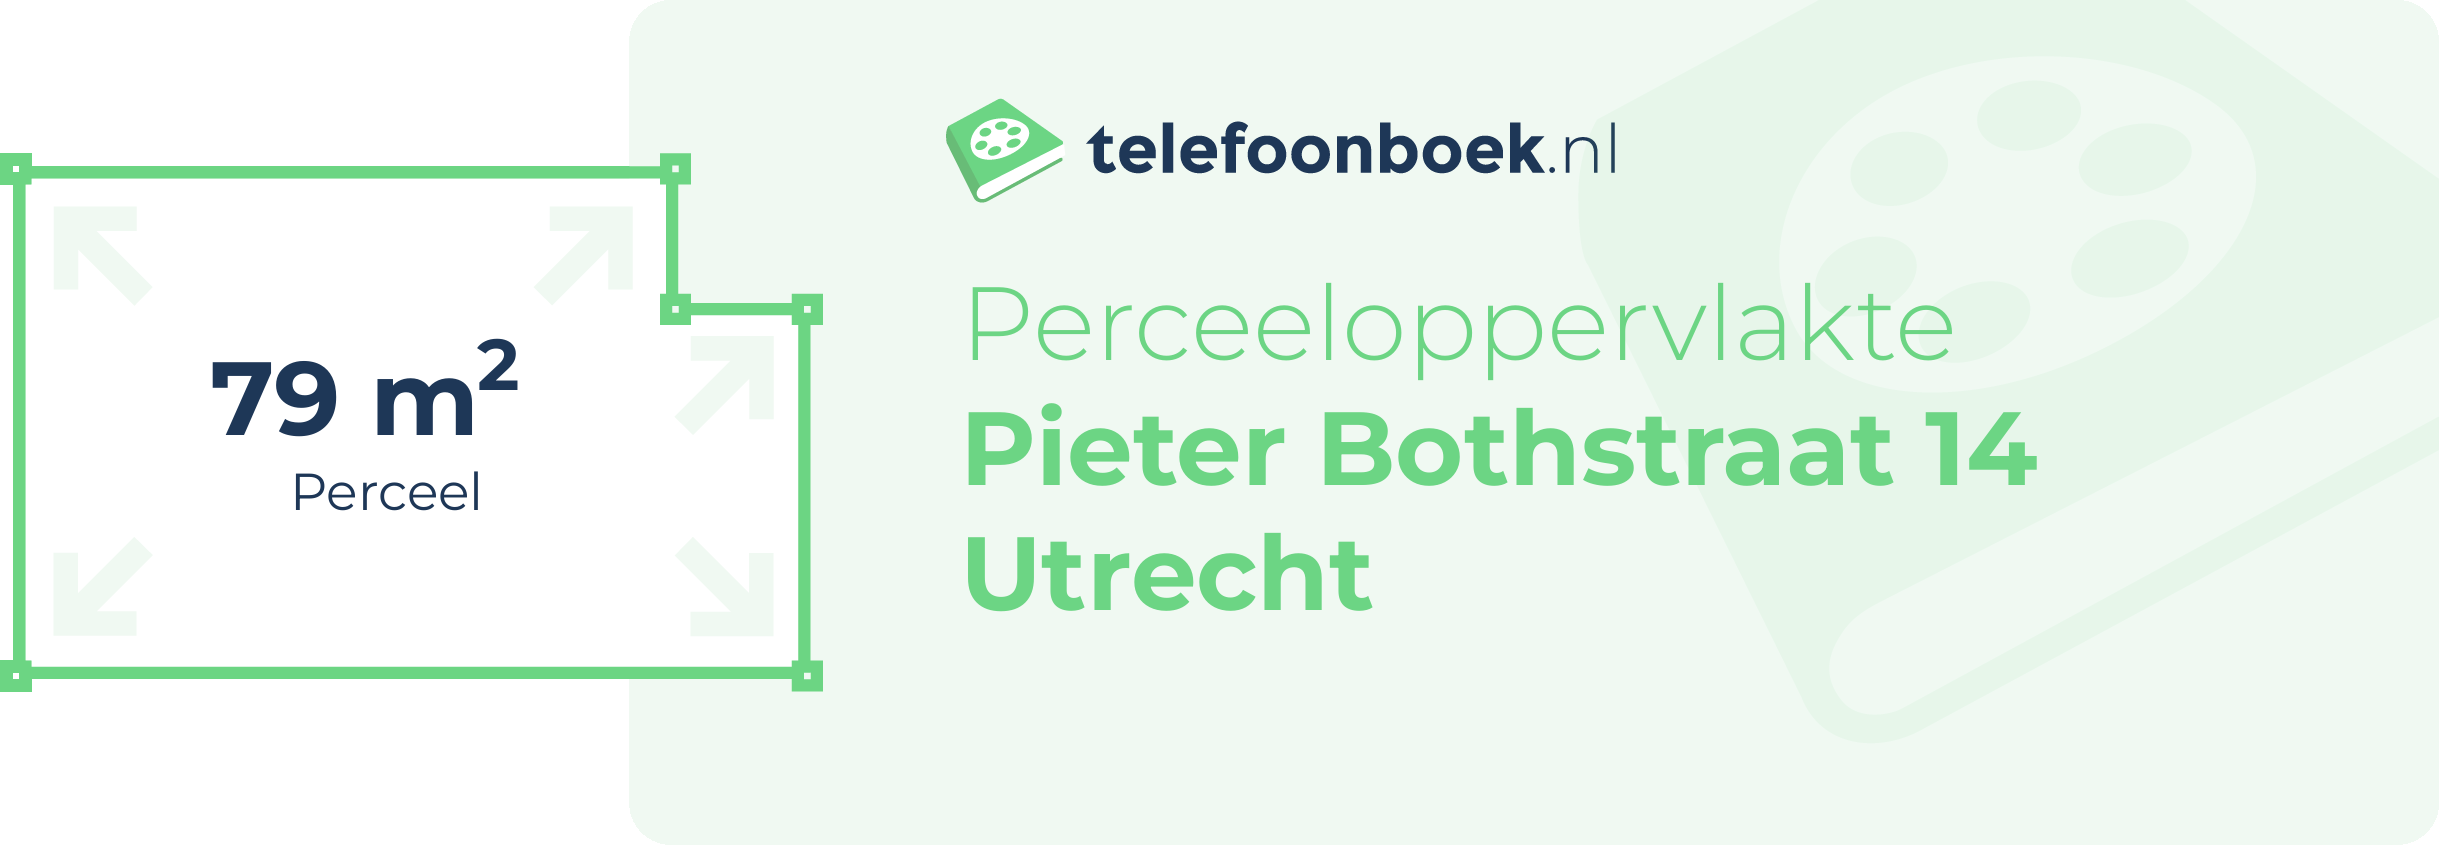 Perceeloppervlakte Pieter Bothstraat 14 Utrecht